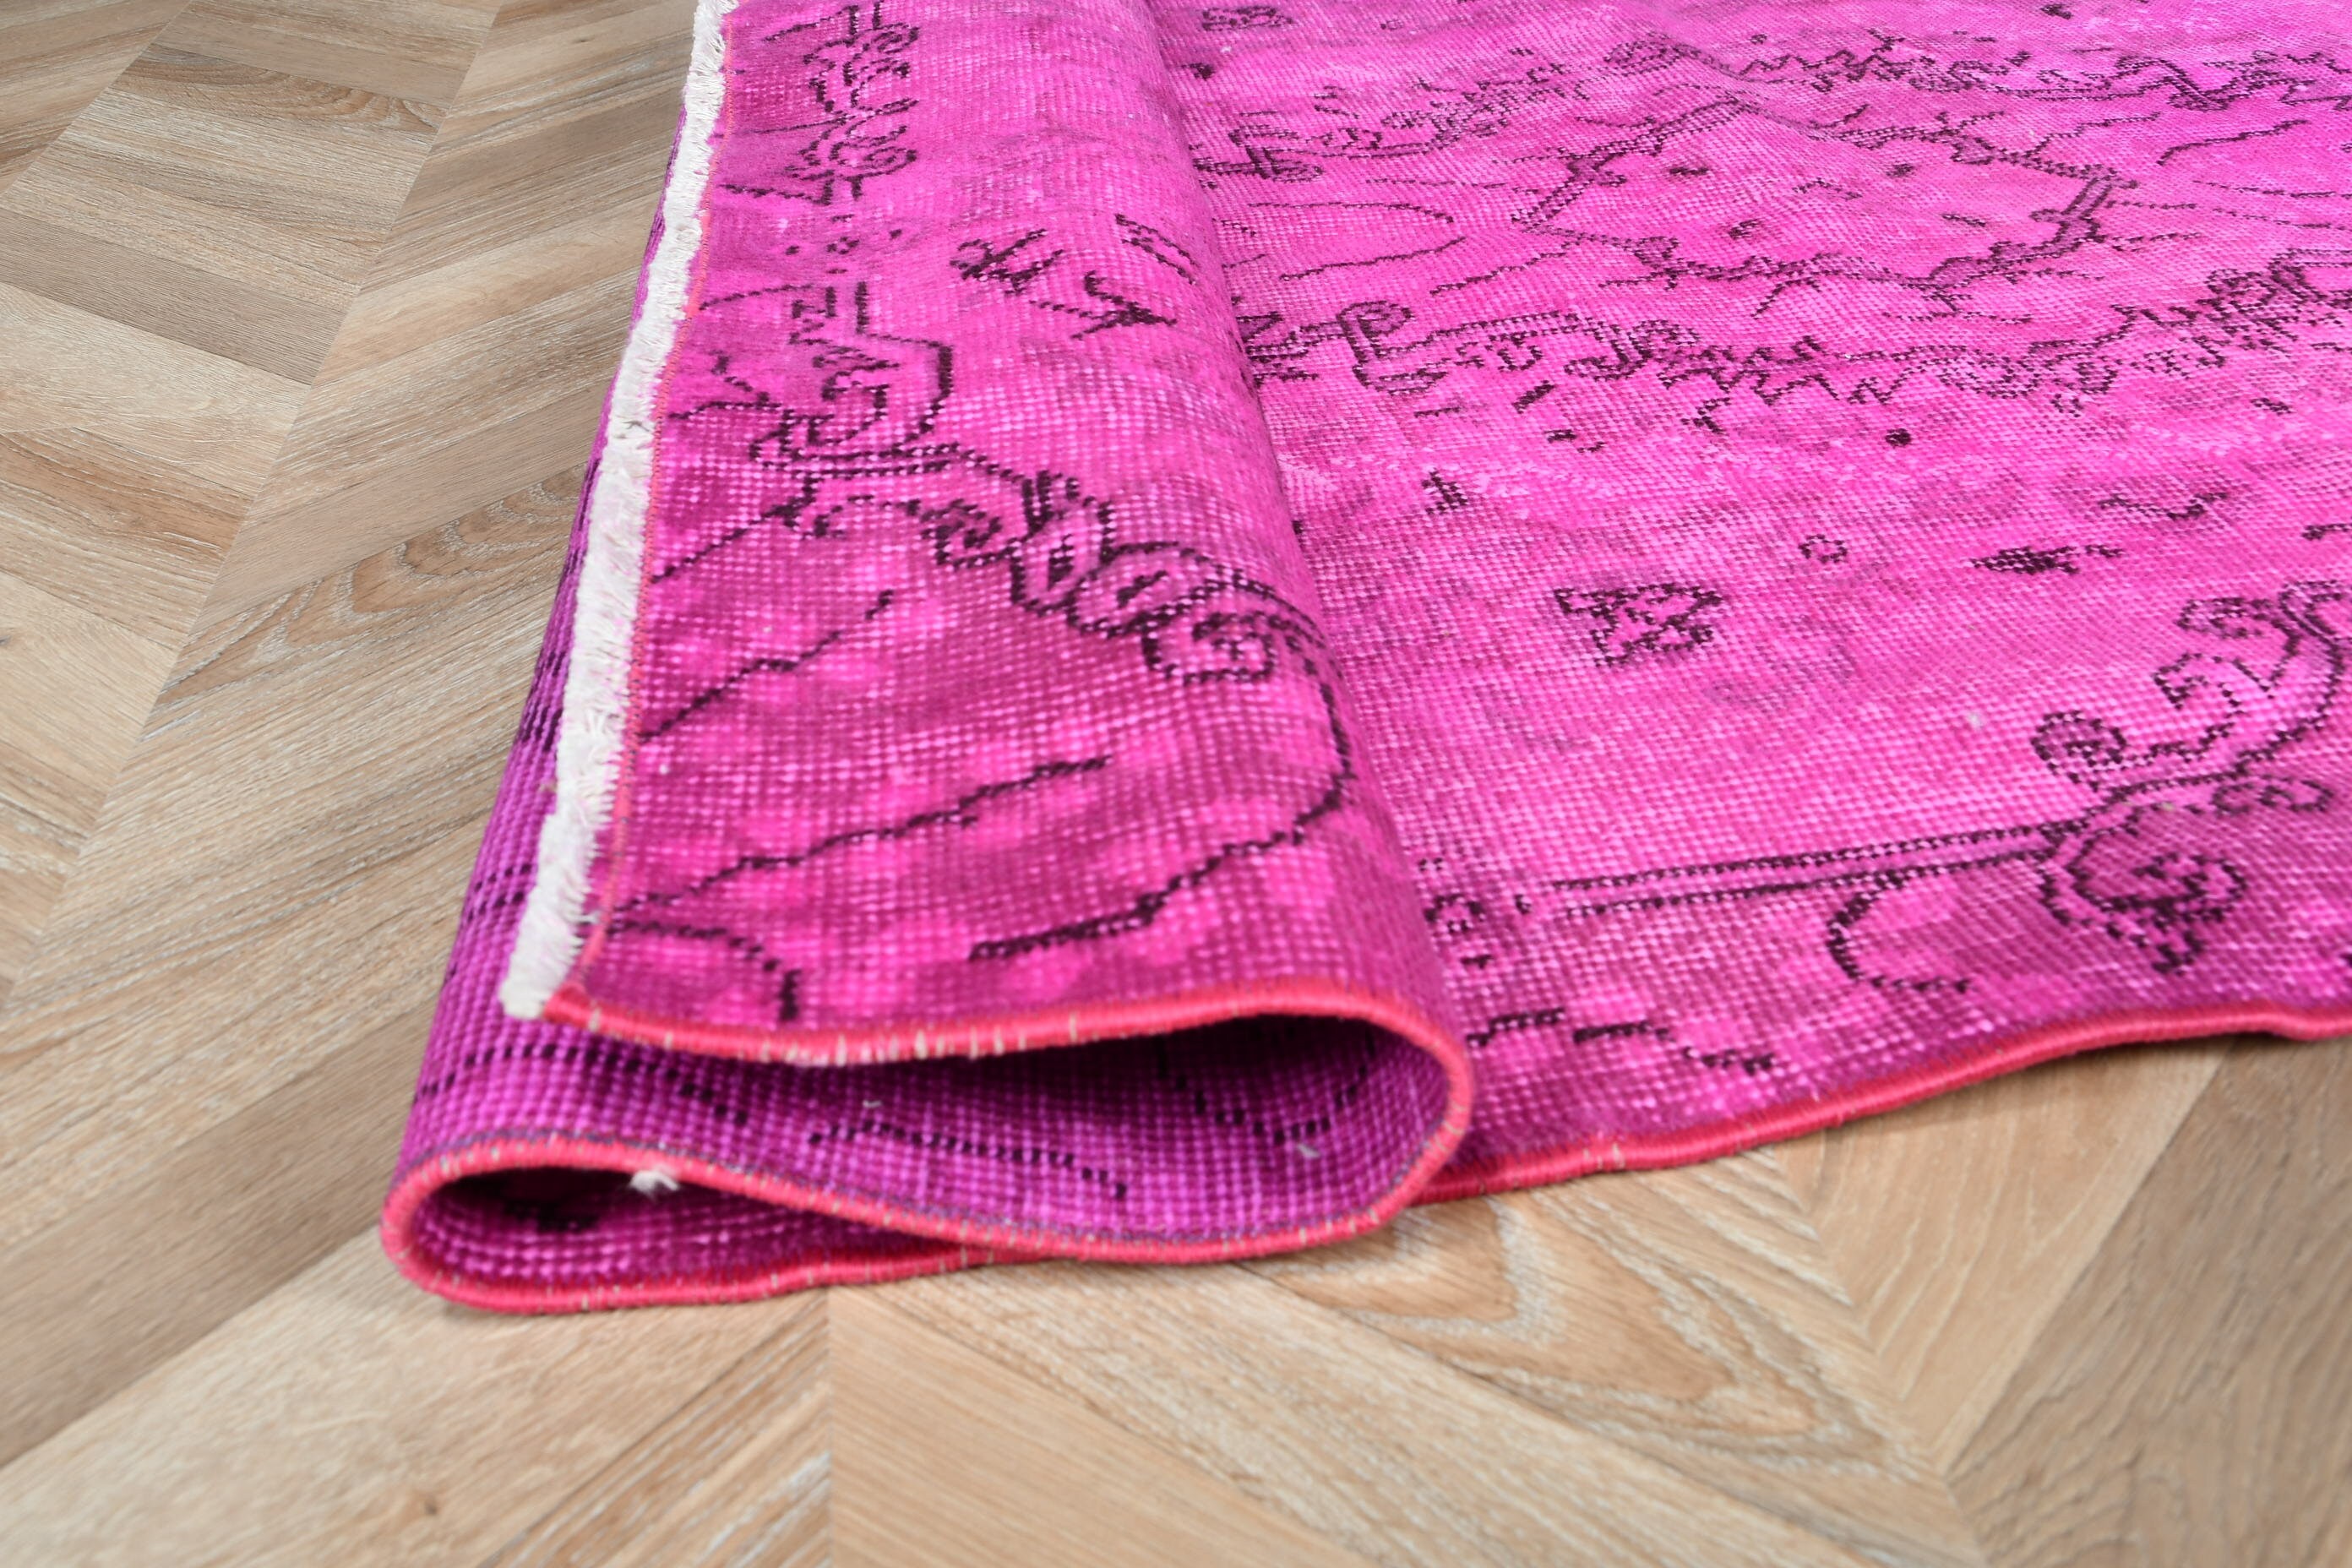 Vintage Rugs, Kitchen Rugs, Turkish Rugs, Nursery Rug, Purple Floor Rug, 3.6x6.4 ft Accent Rug, Rugs for Bedroom, Oriental Rug, Entry Rug